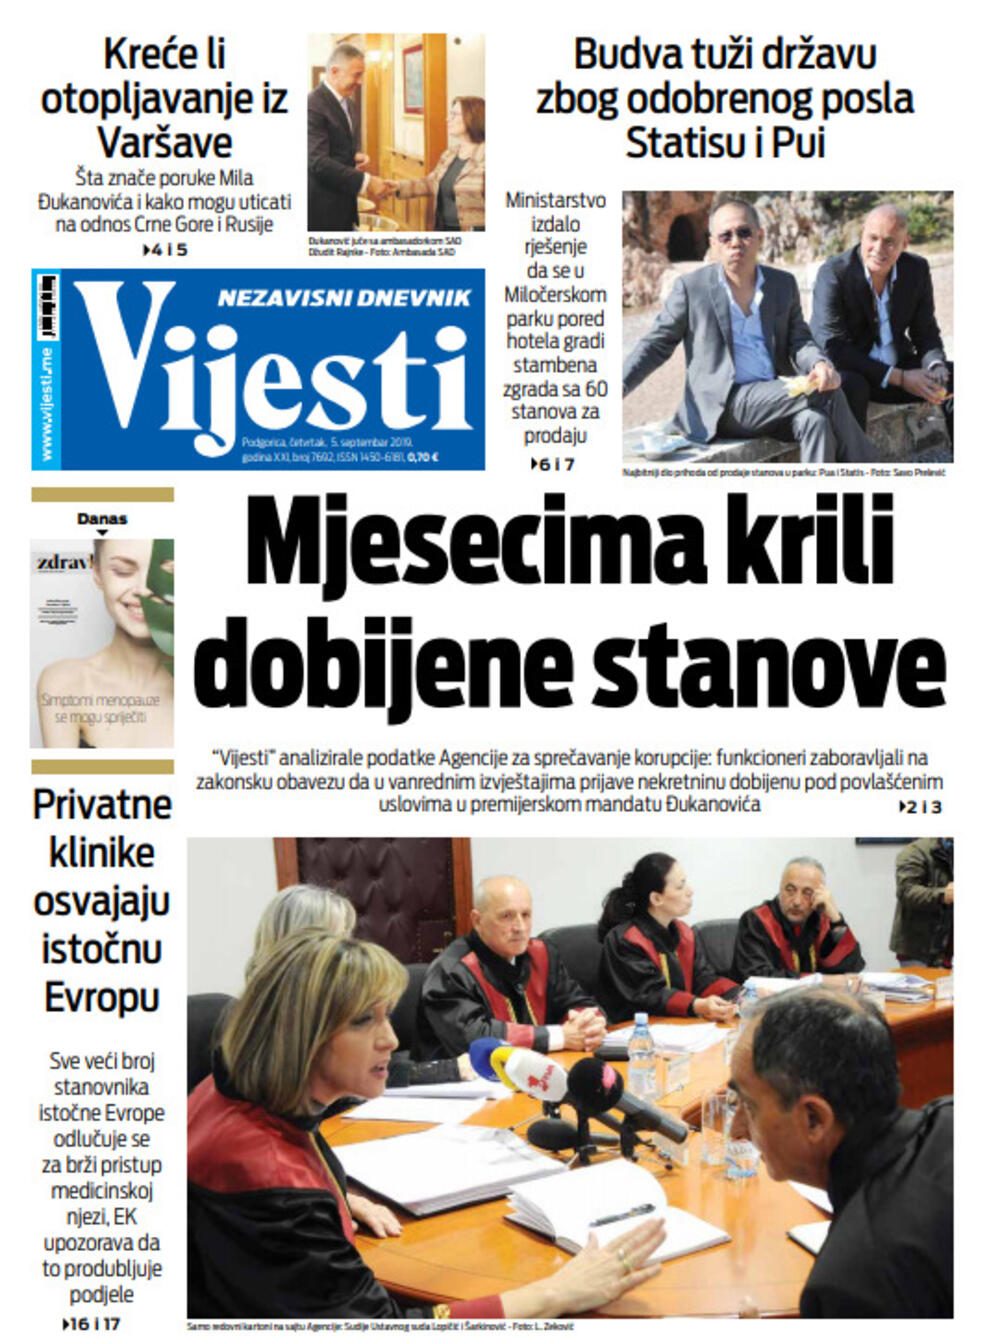 Naslovna strana "Vijesti" za peti septembar, Foto: Vijesti